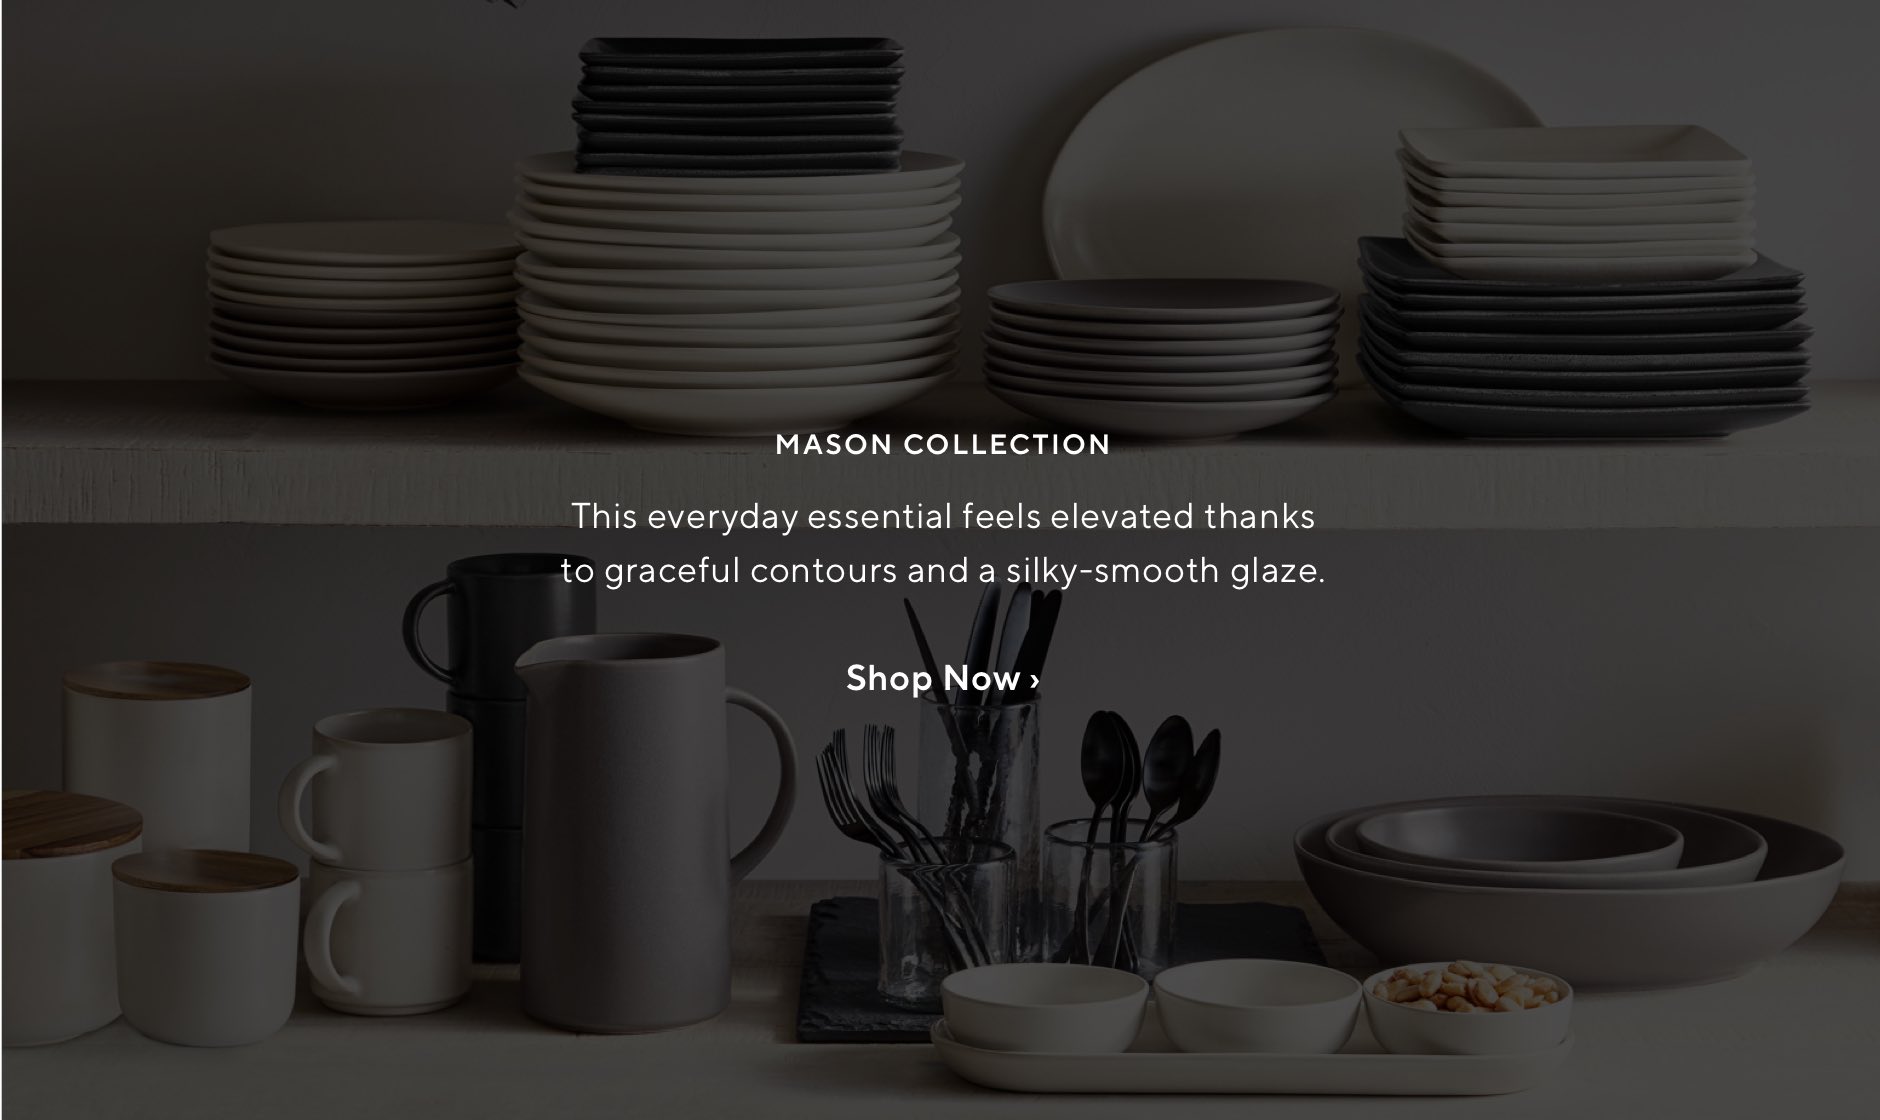 Mason Collection